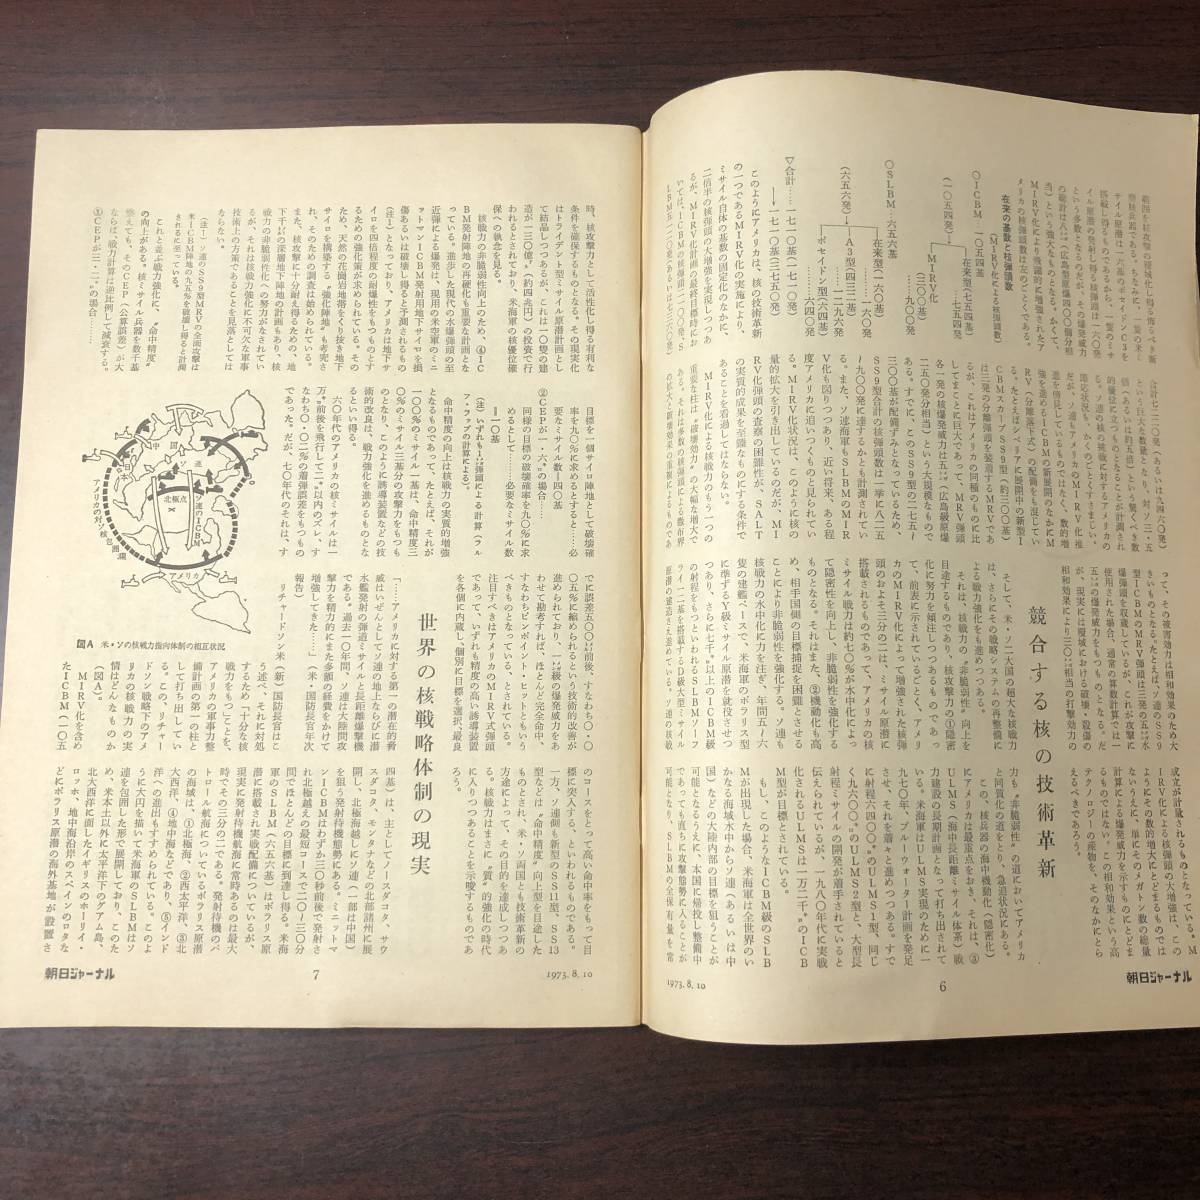 A01【ゆうメール送料無料】朝日ジャーナル 1973年8月10日号 VOL.15 NO.31の画像4